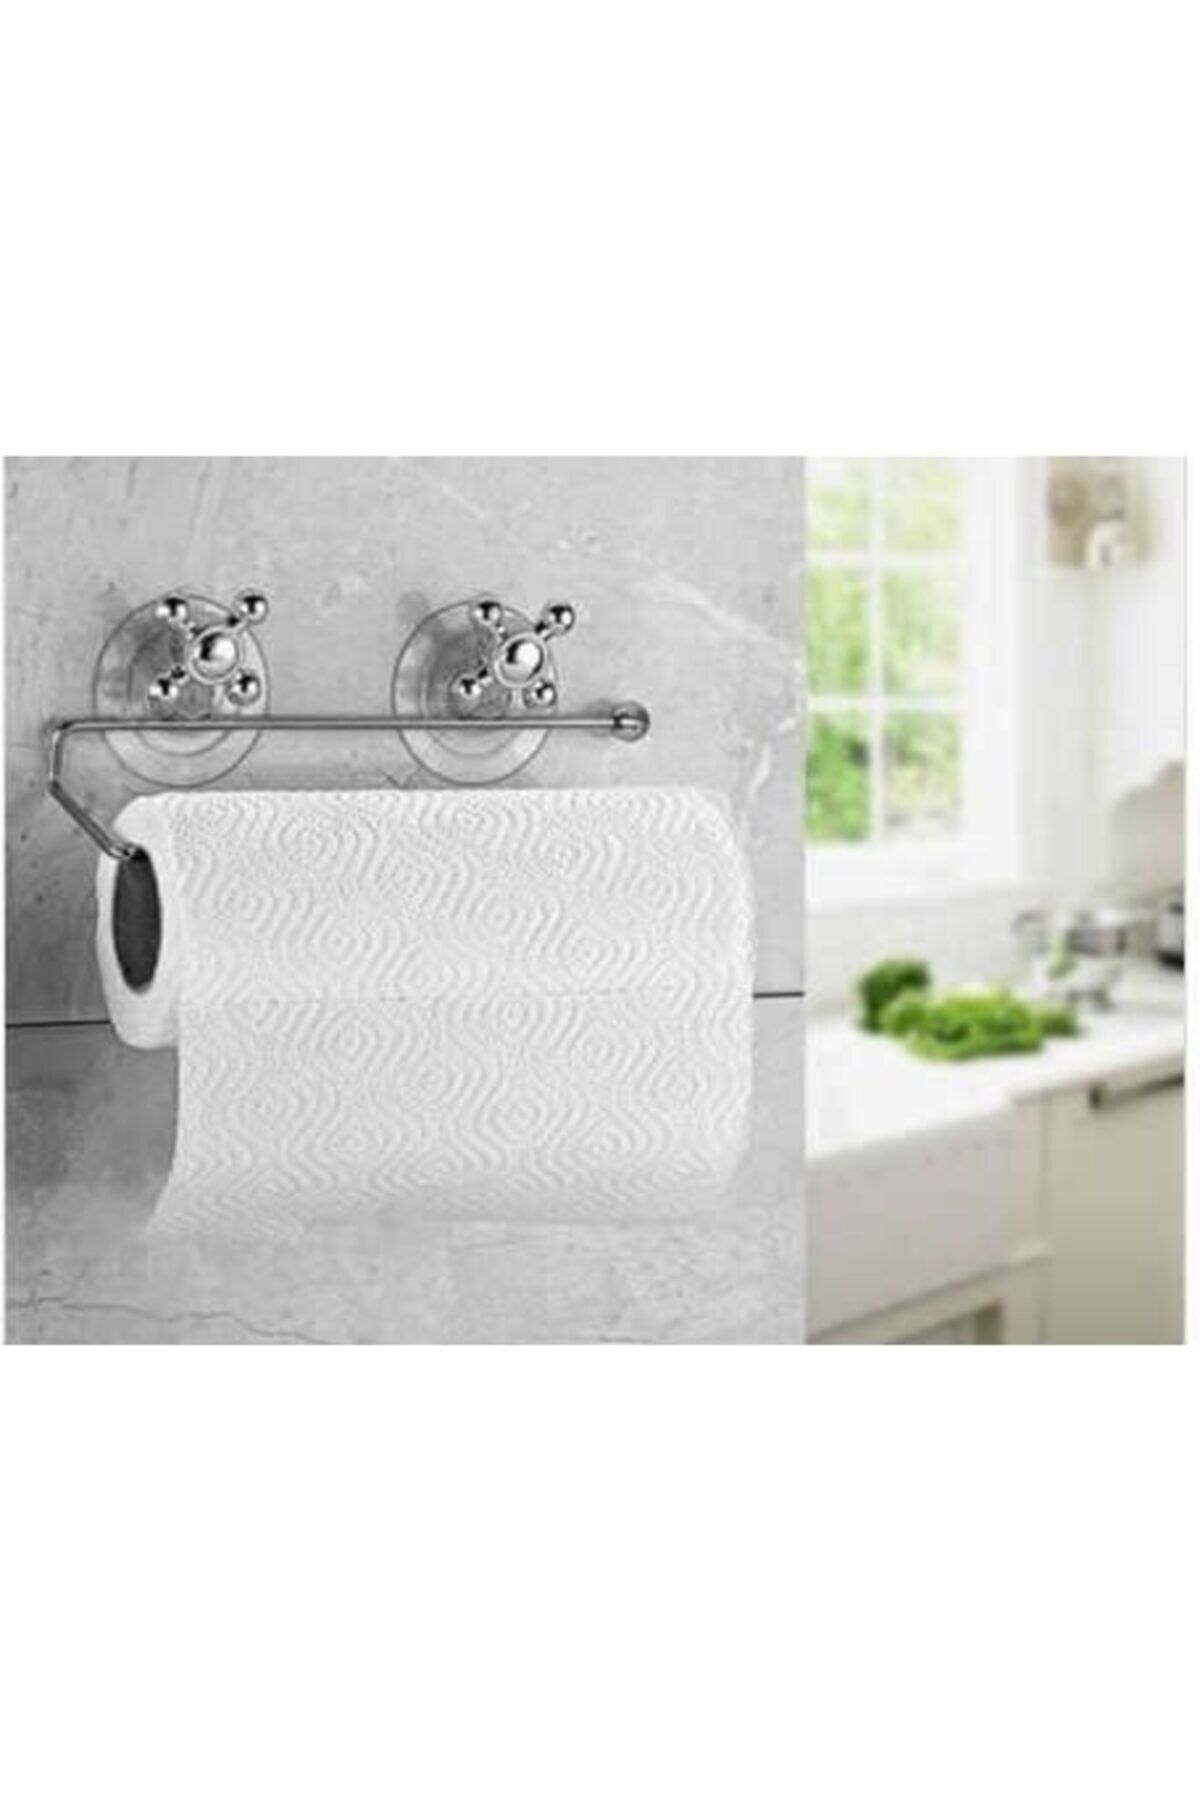 Hitfoni Havluluk Tutucu Vakumlu Banyo Tuvalet Duvar Kağıt Havlu Askısı